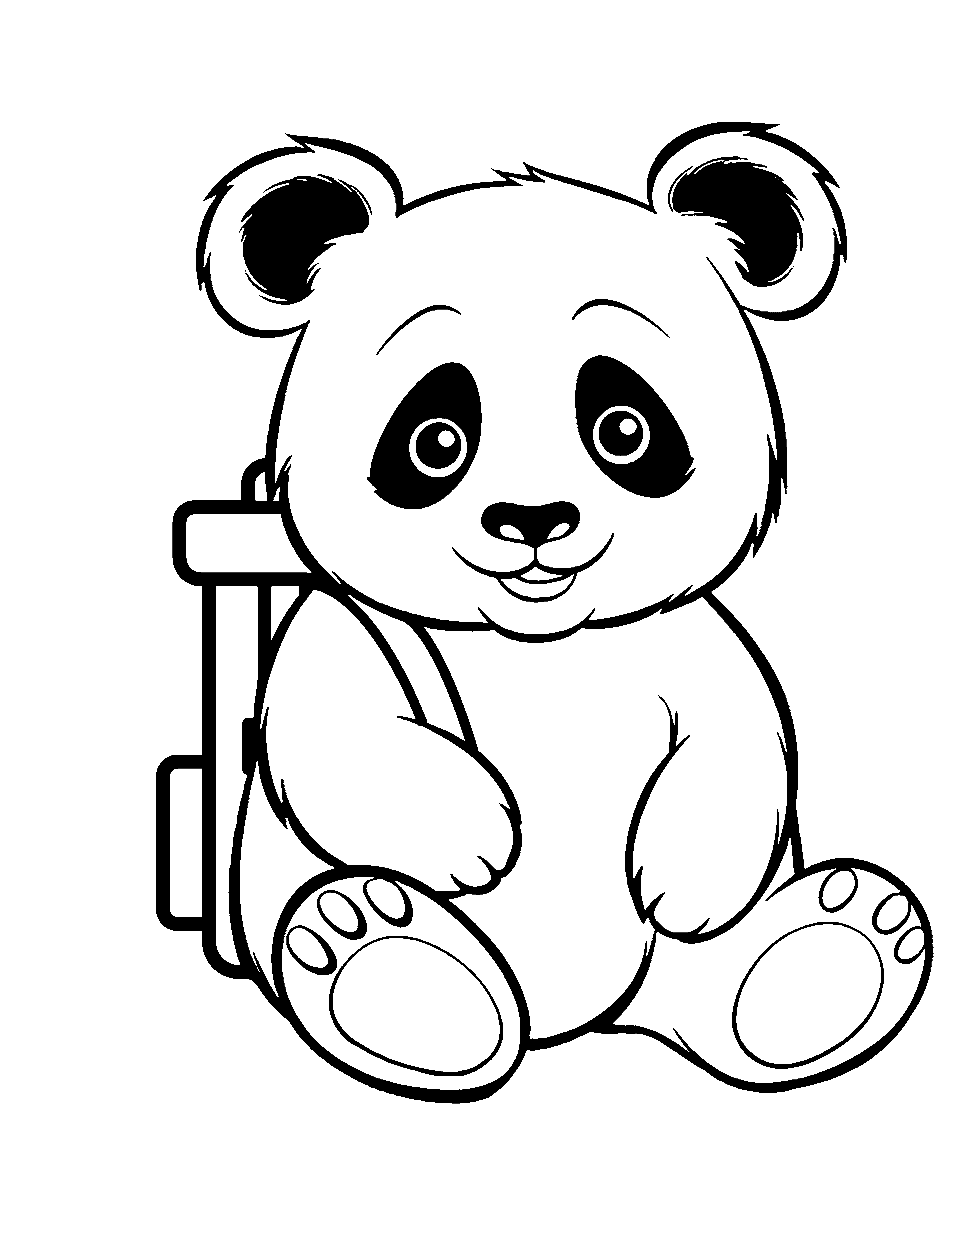 Baby Panda In Teacup by dren98 | Schizzi, Schizzi d'arte, Disegno di animali